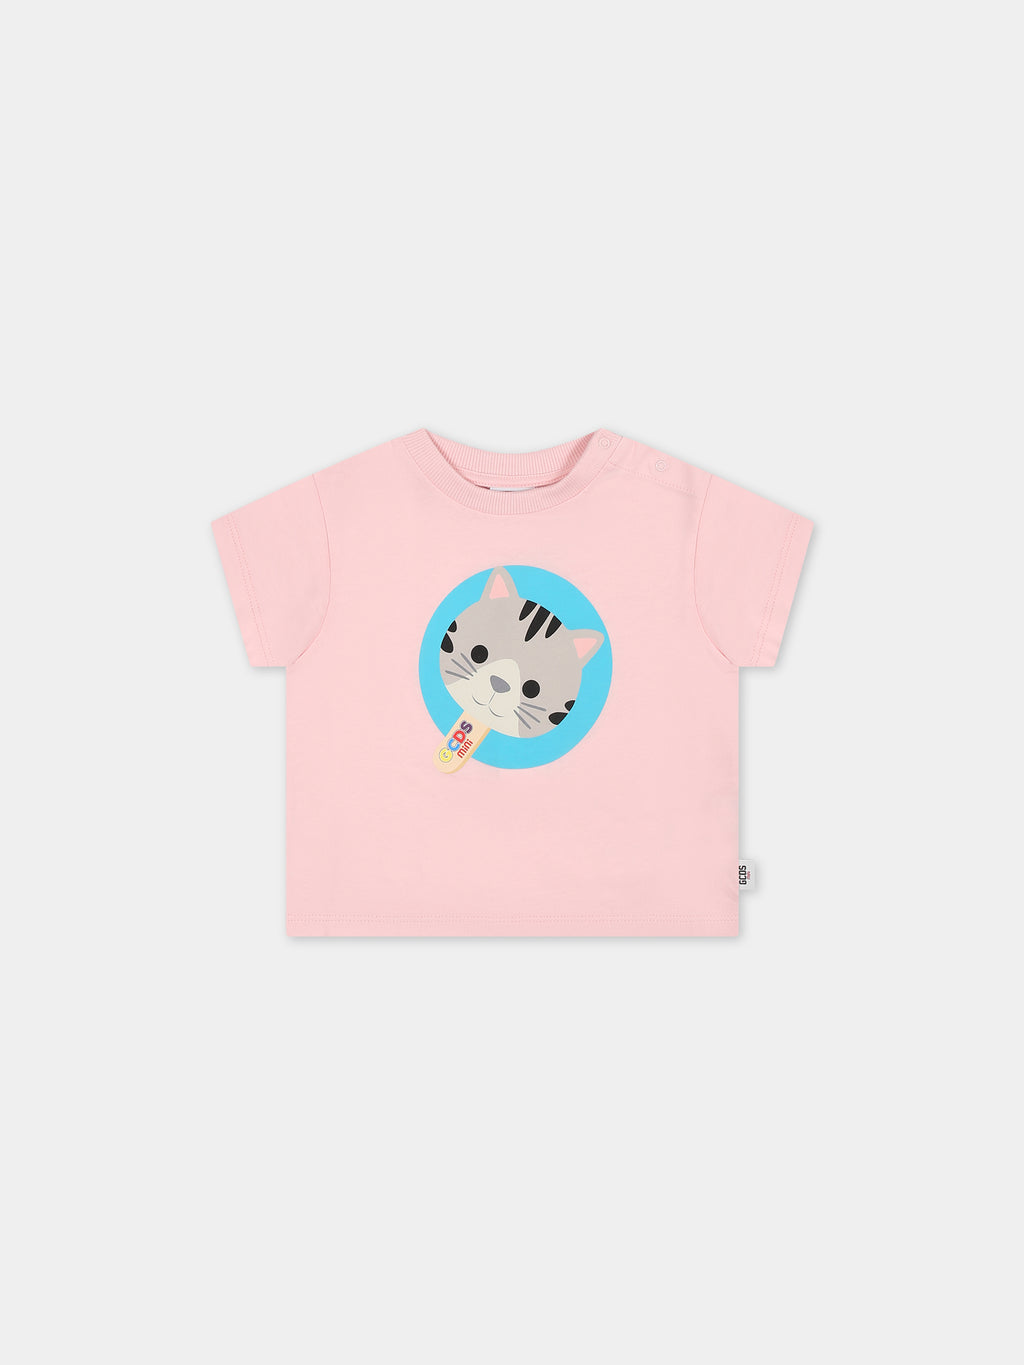 T-shirt rose pour bébé fille avec chaton